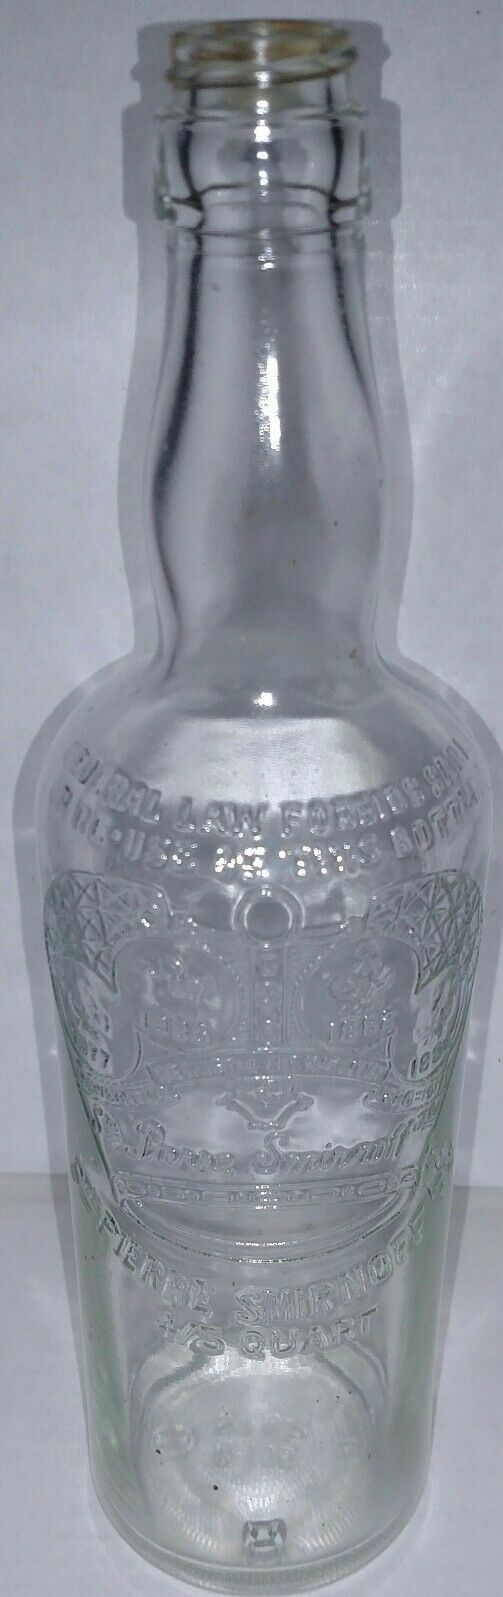 STE PIERRE SMIRNOFF 1818 4/5 Quart vodka liquor clear bottle with cap (empty)